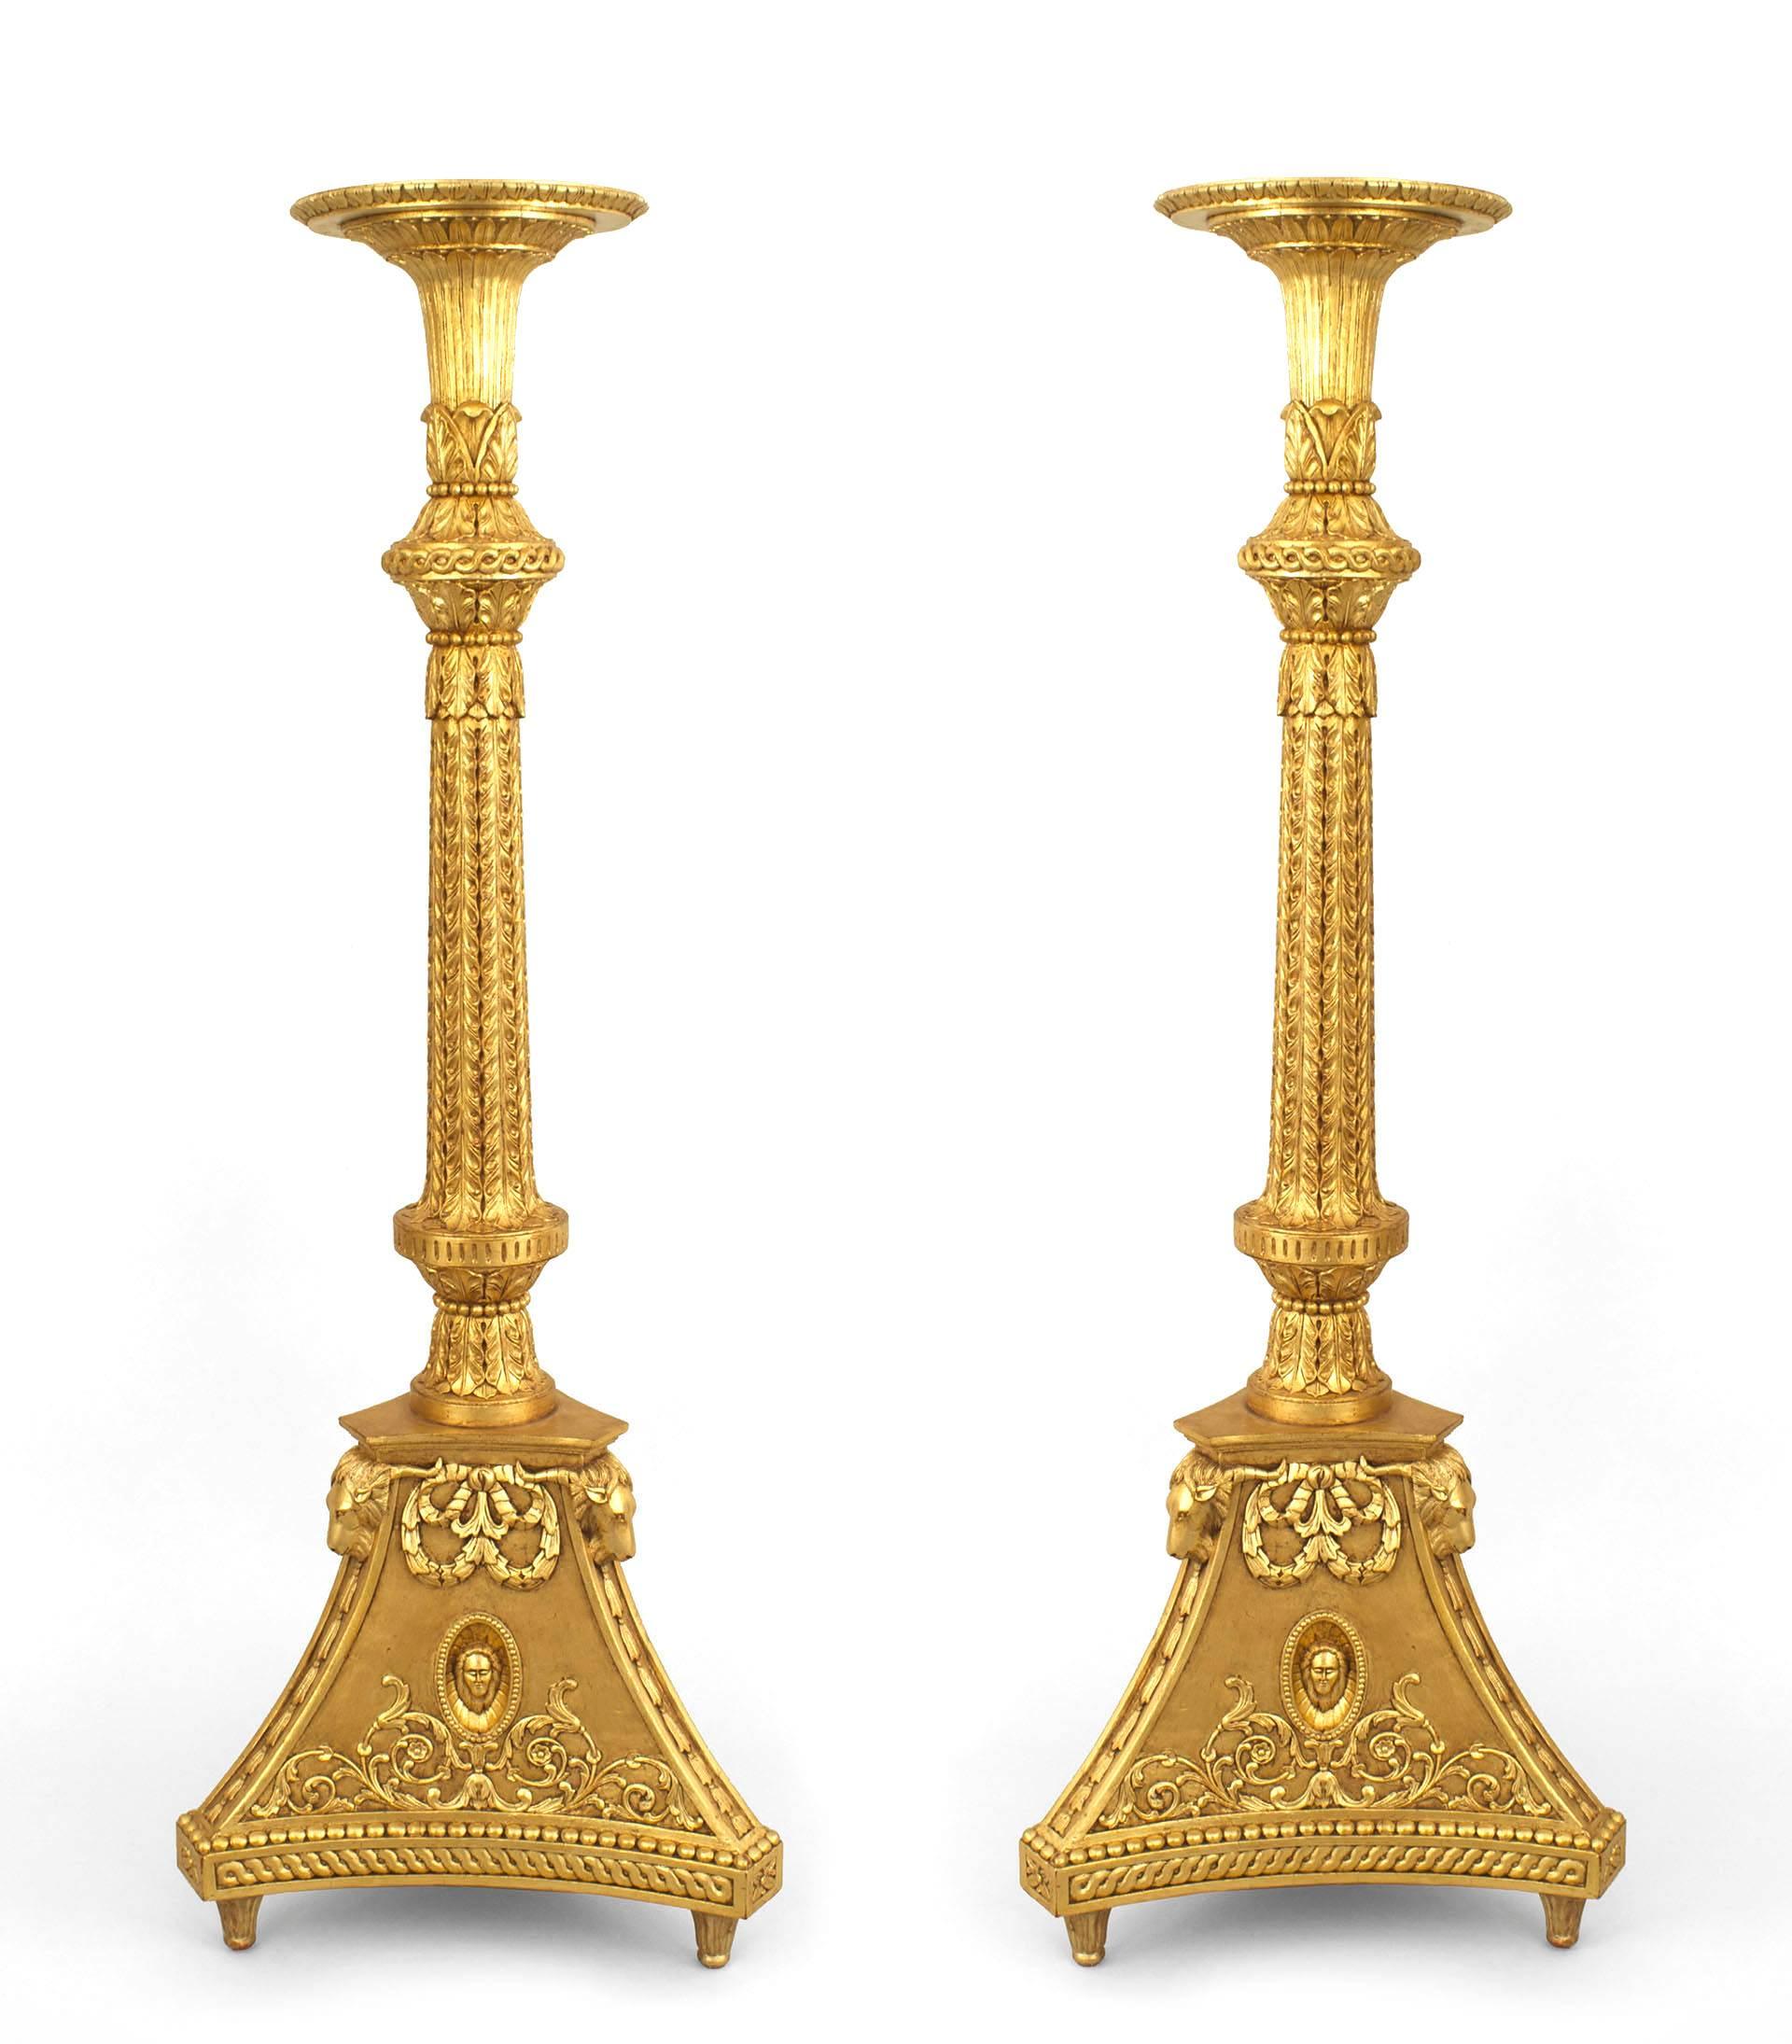 Zwei vergoldete Holzsockel im englischen Adam-Stil (20. Jh.) mit massivem, dreieckigem Sockel.
